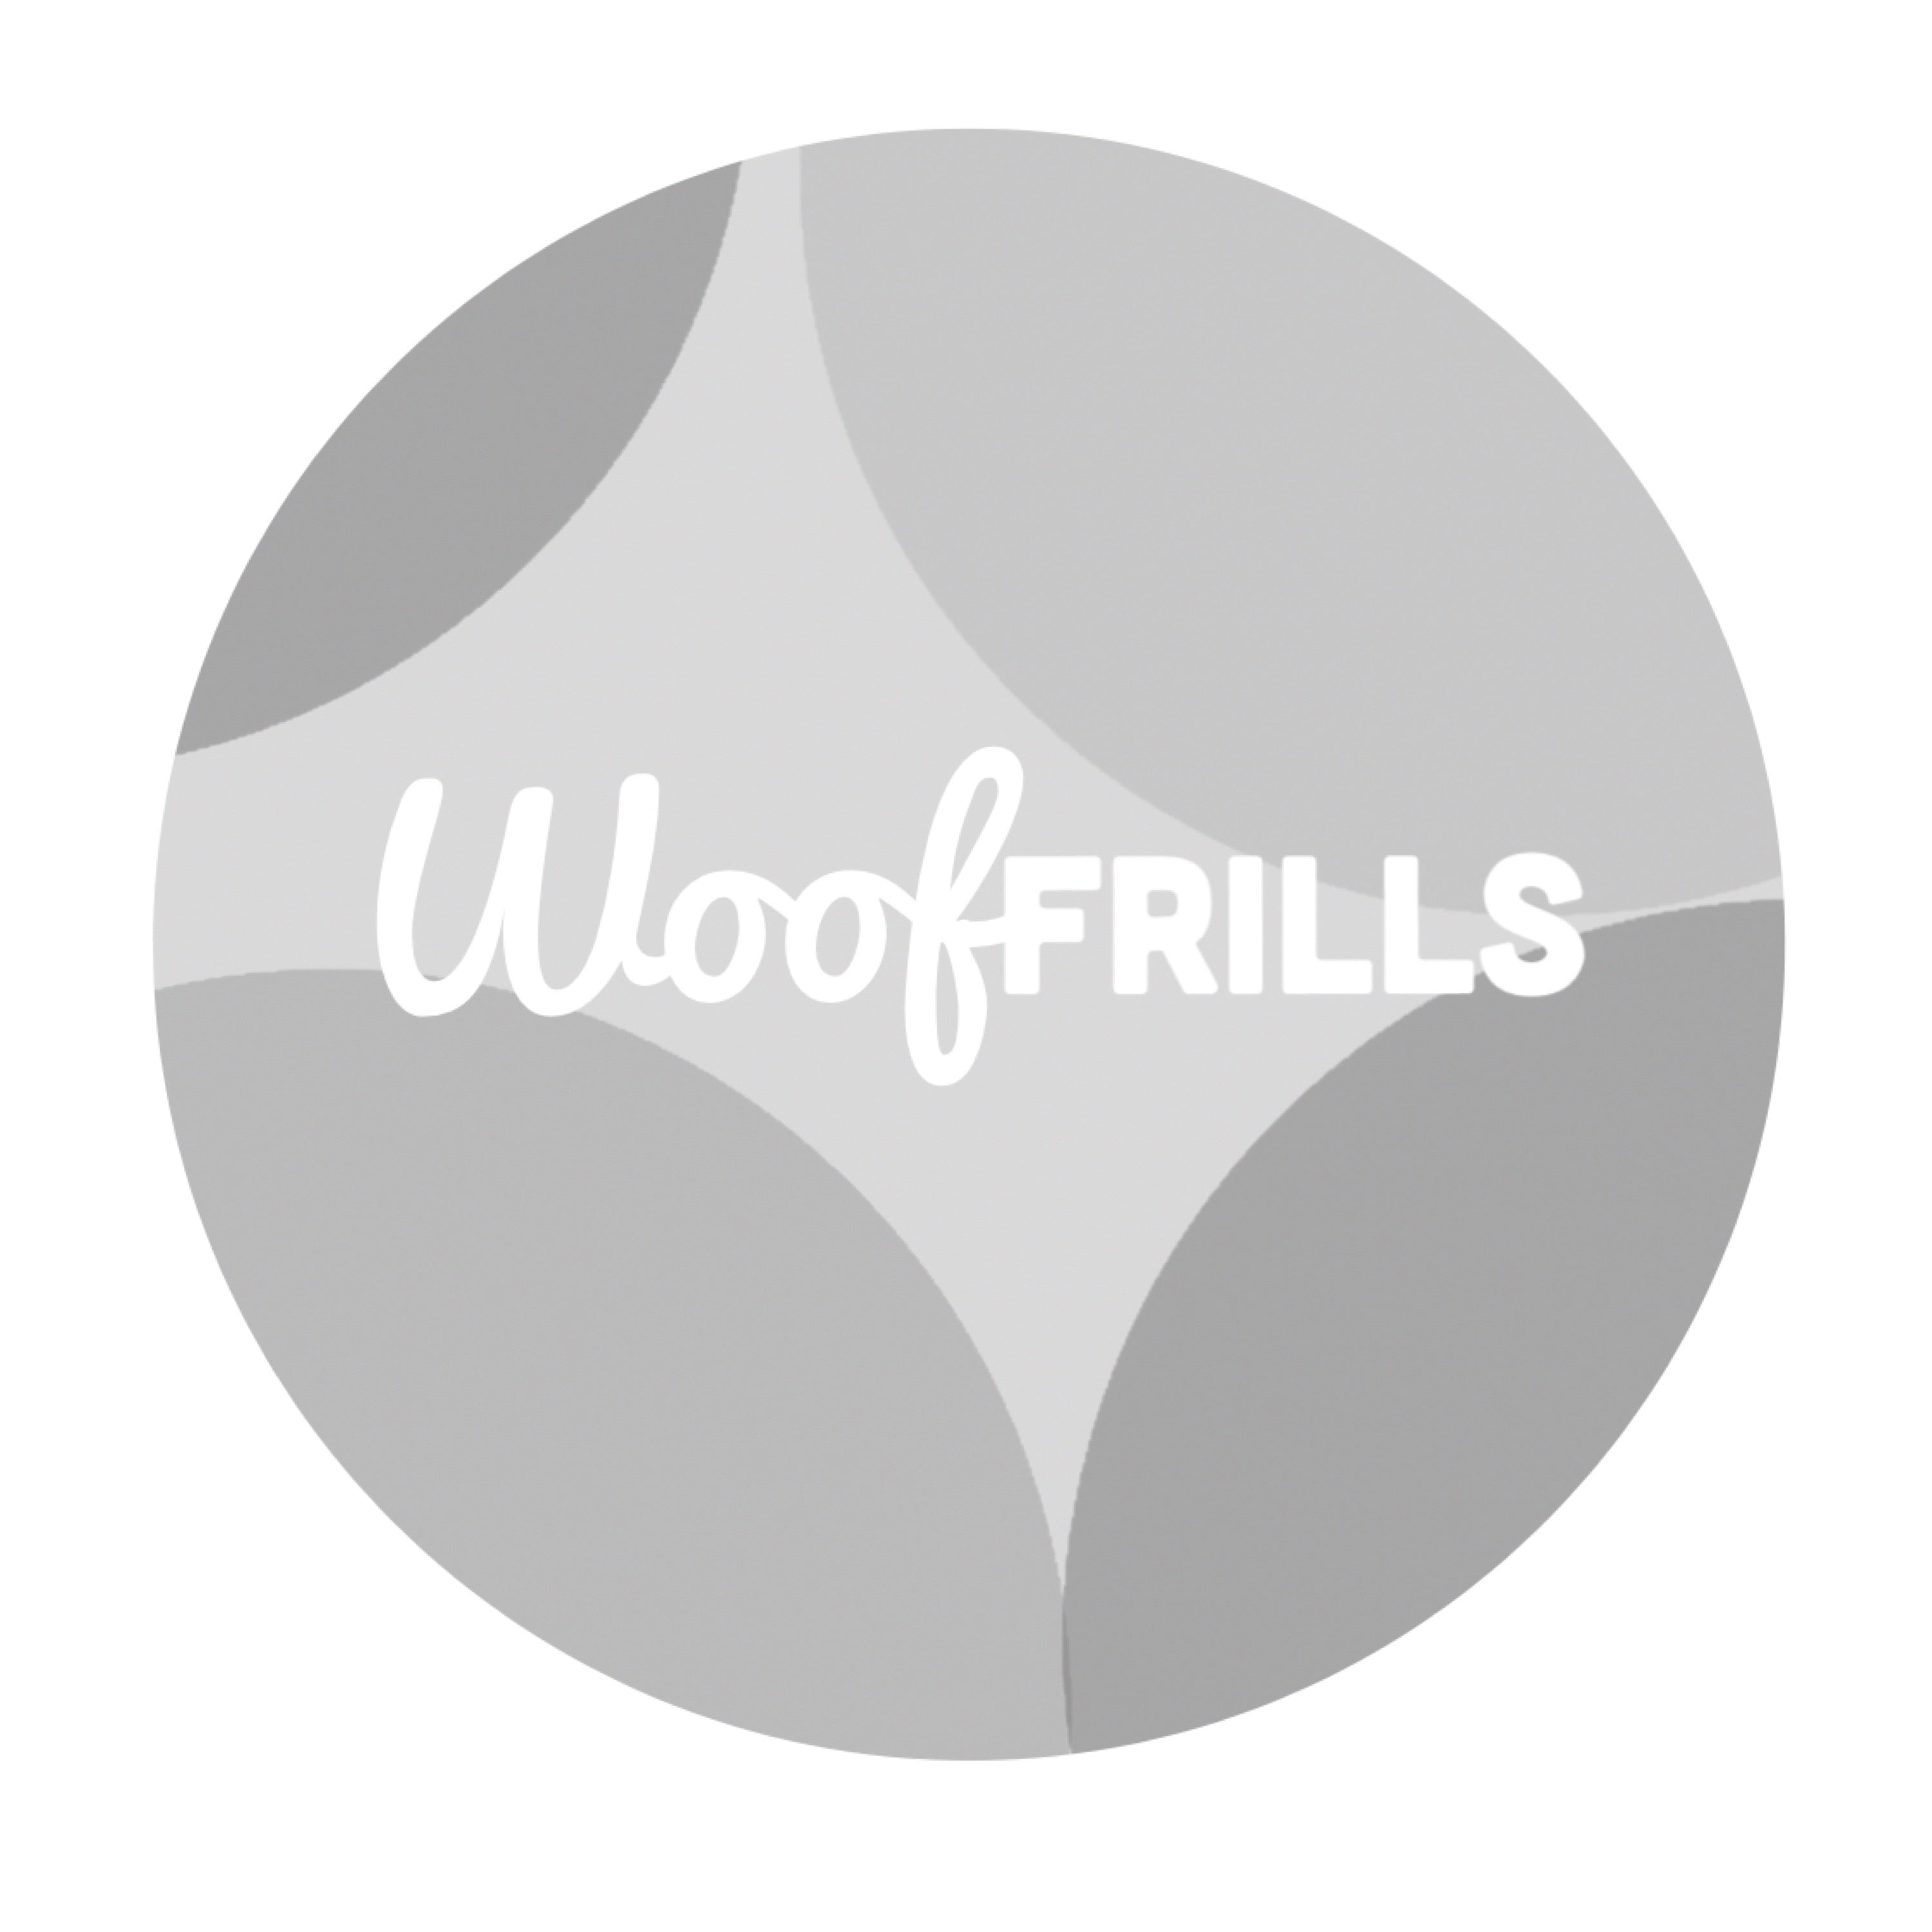 Woof Frills